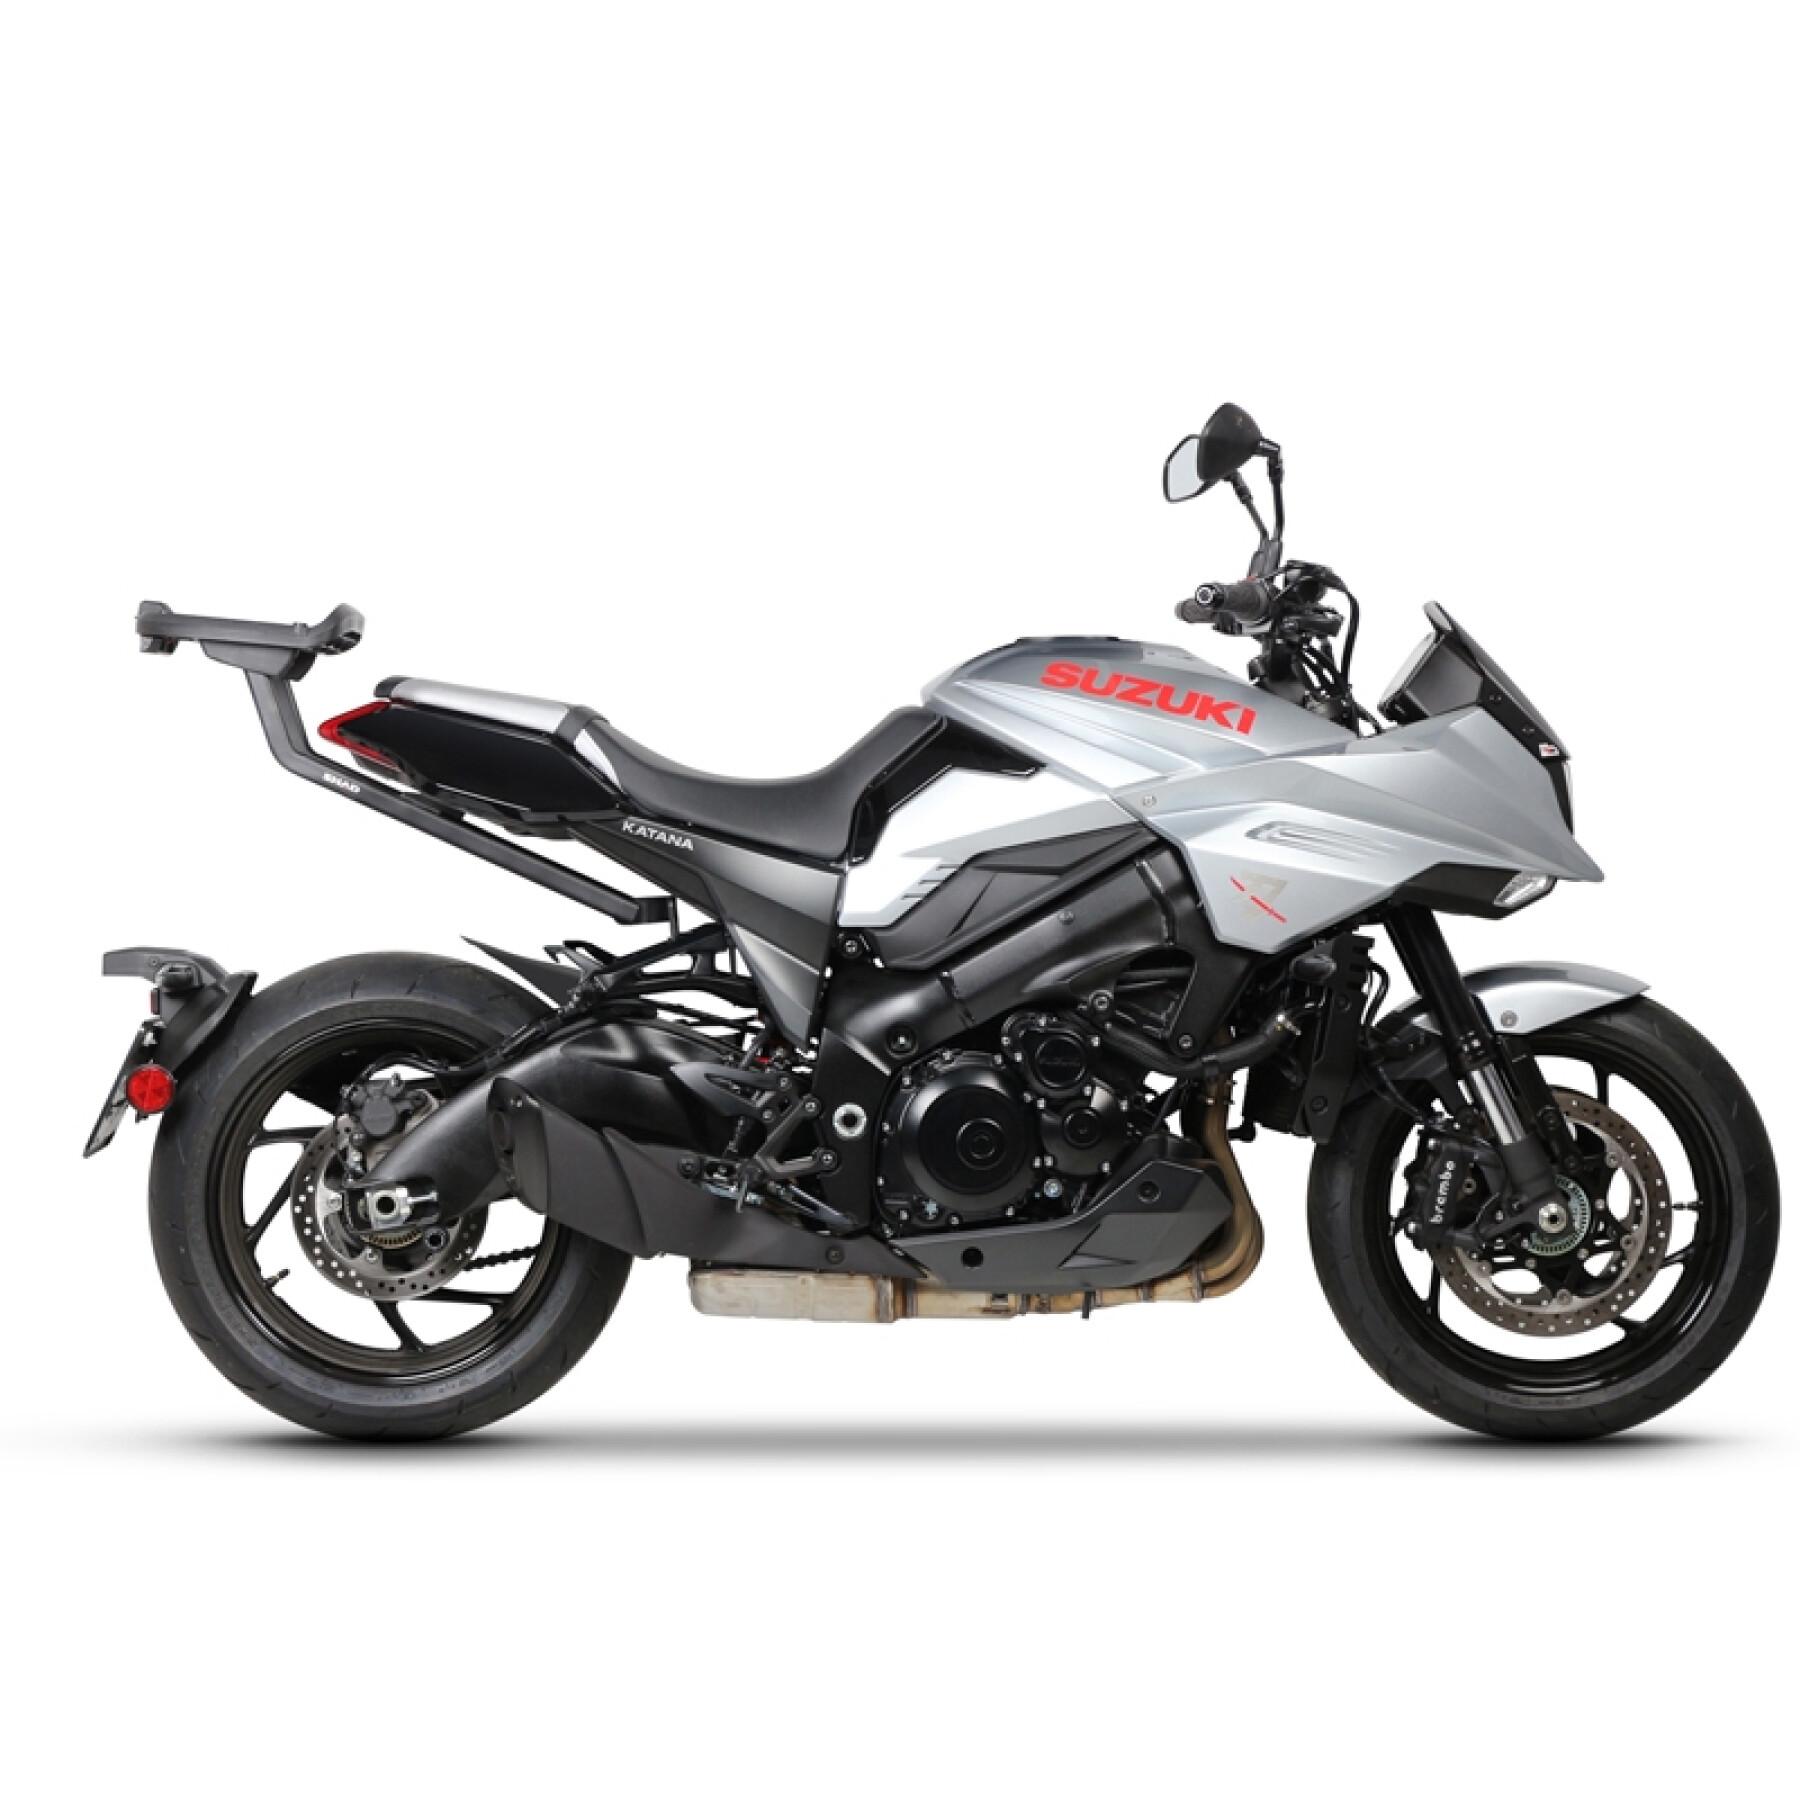 Motorcycle top case support Shad Suzuki Katana 1000 2018-2021